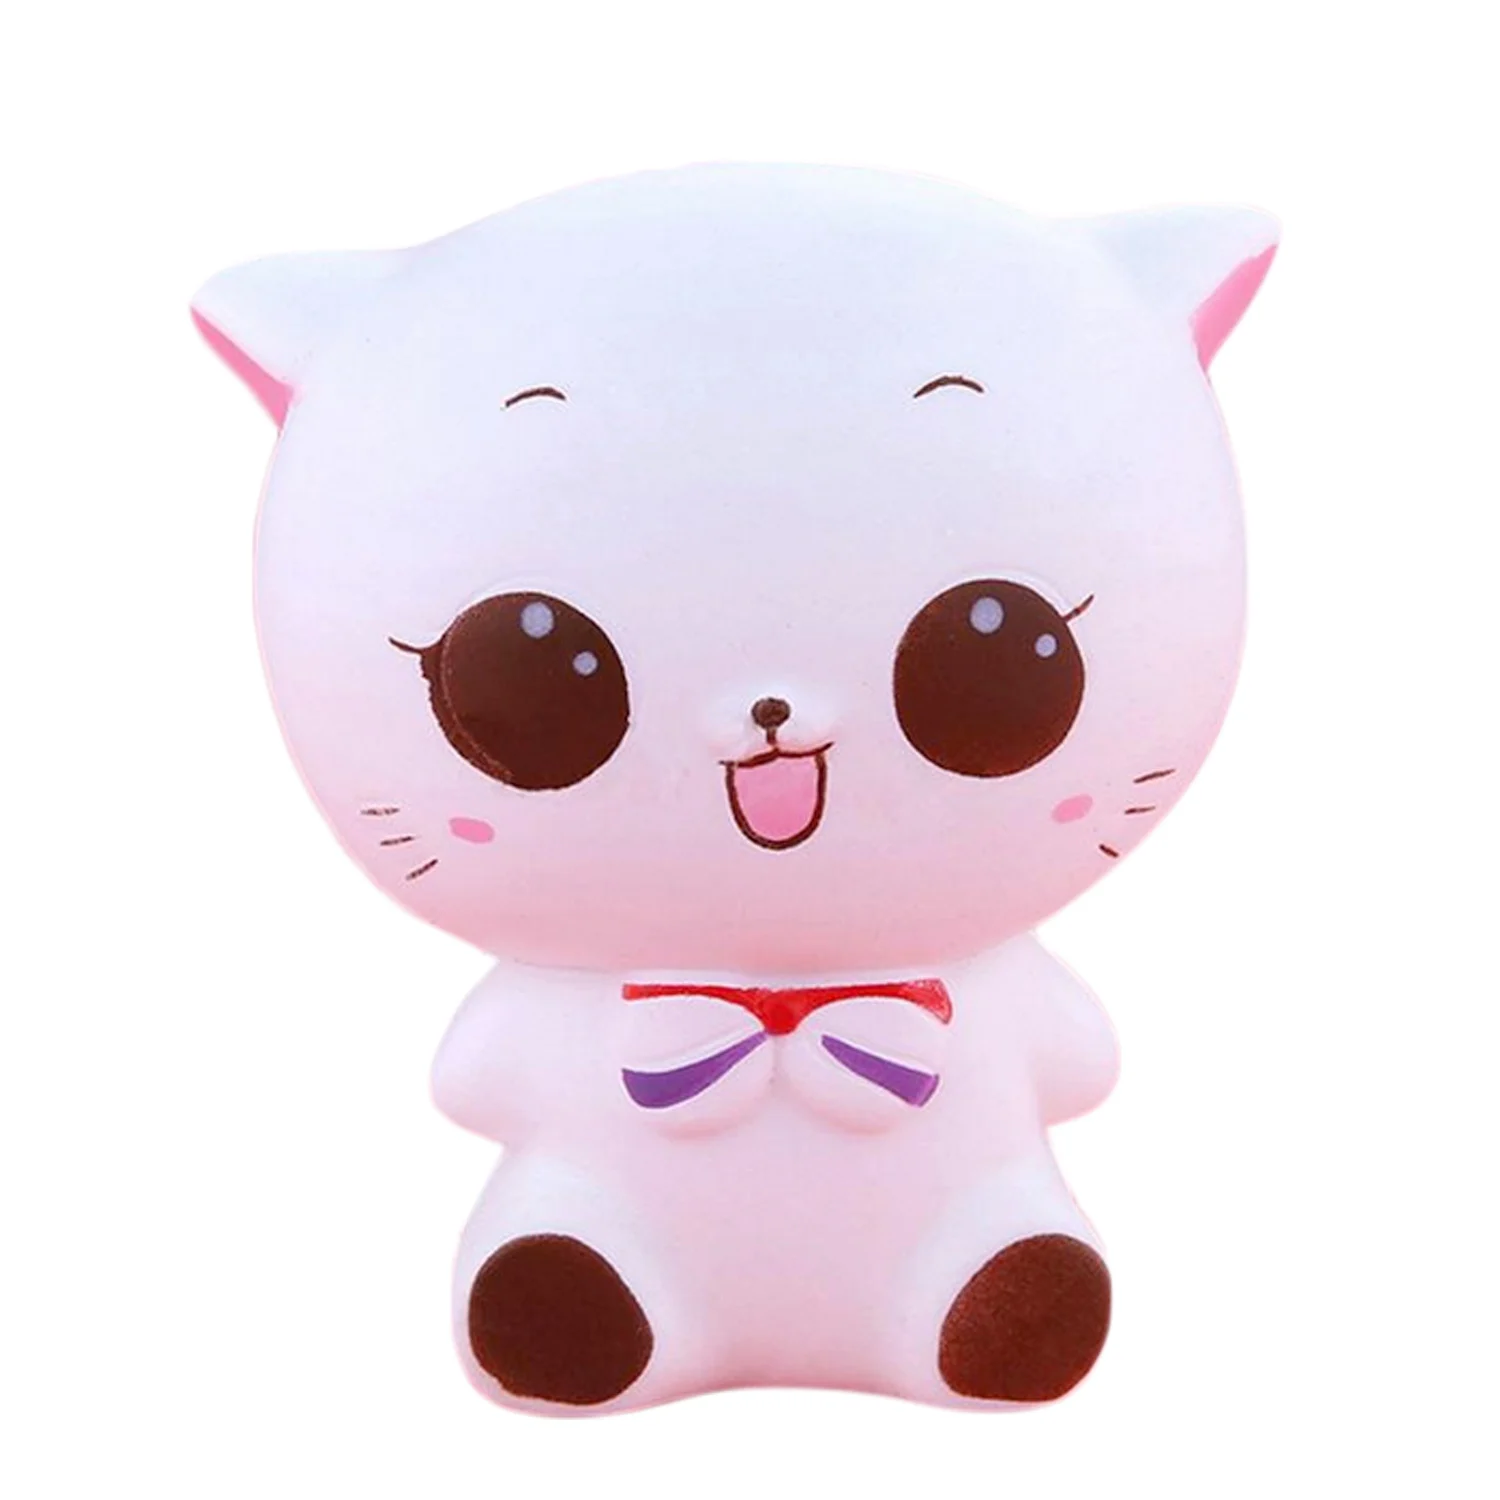 Tanie Śliczny biały kot Squishy Kawaii powolny wzrost zabawki do ściskania uzdrawianie zabawa dzieci Kawaii sklep